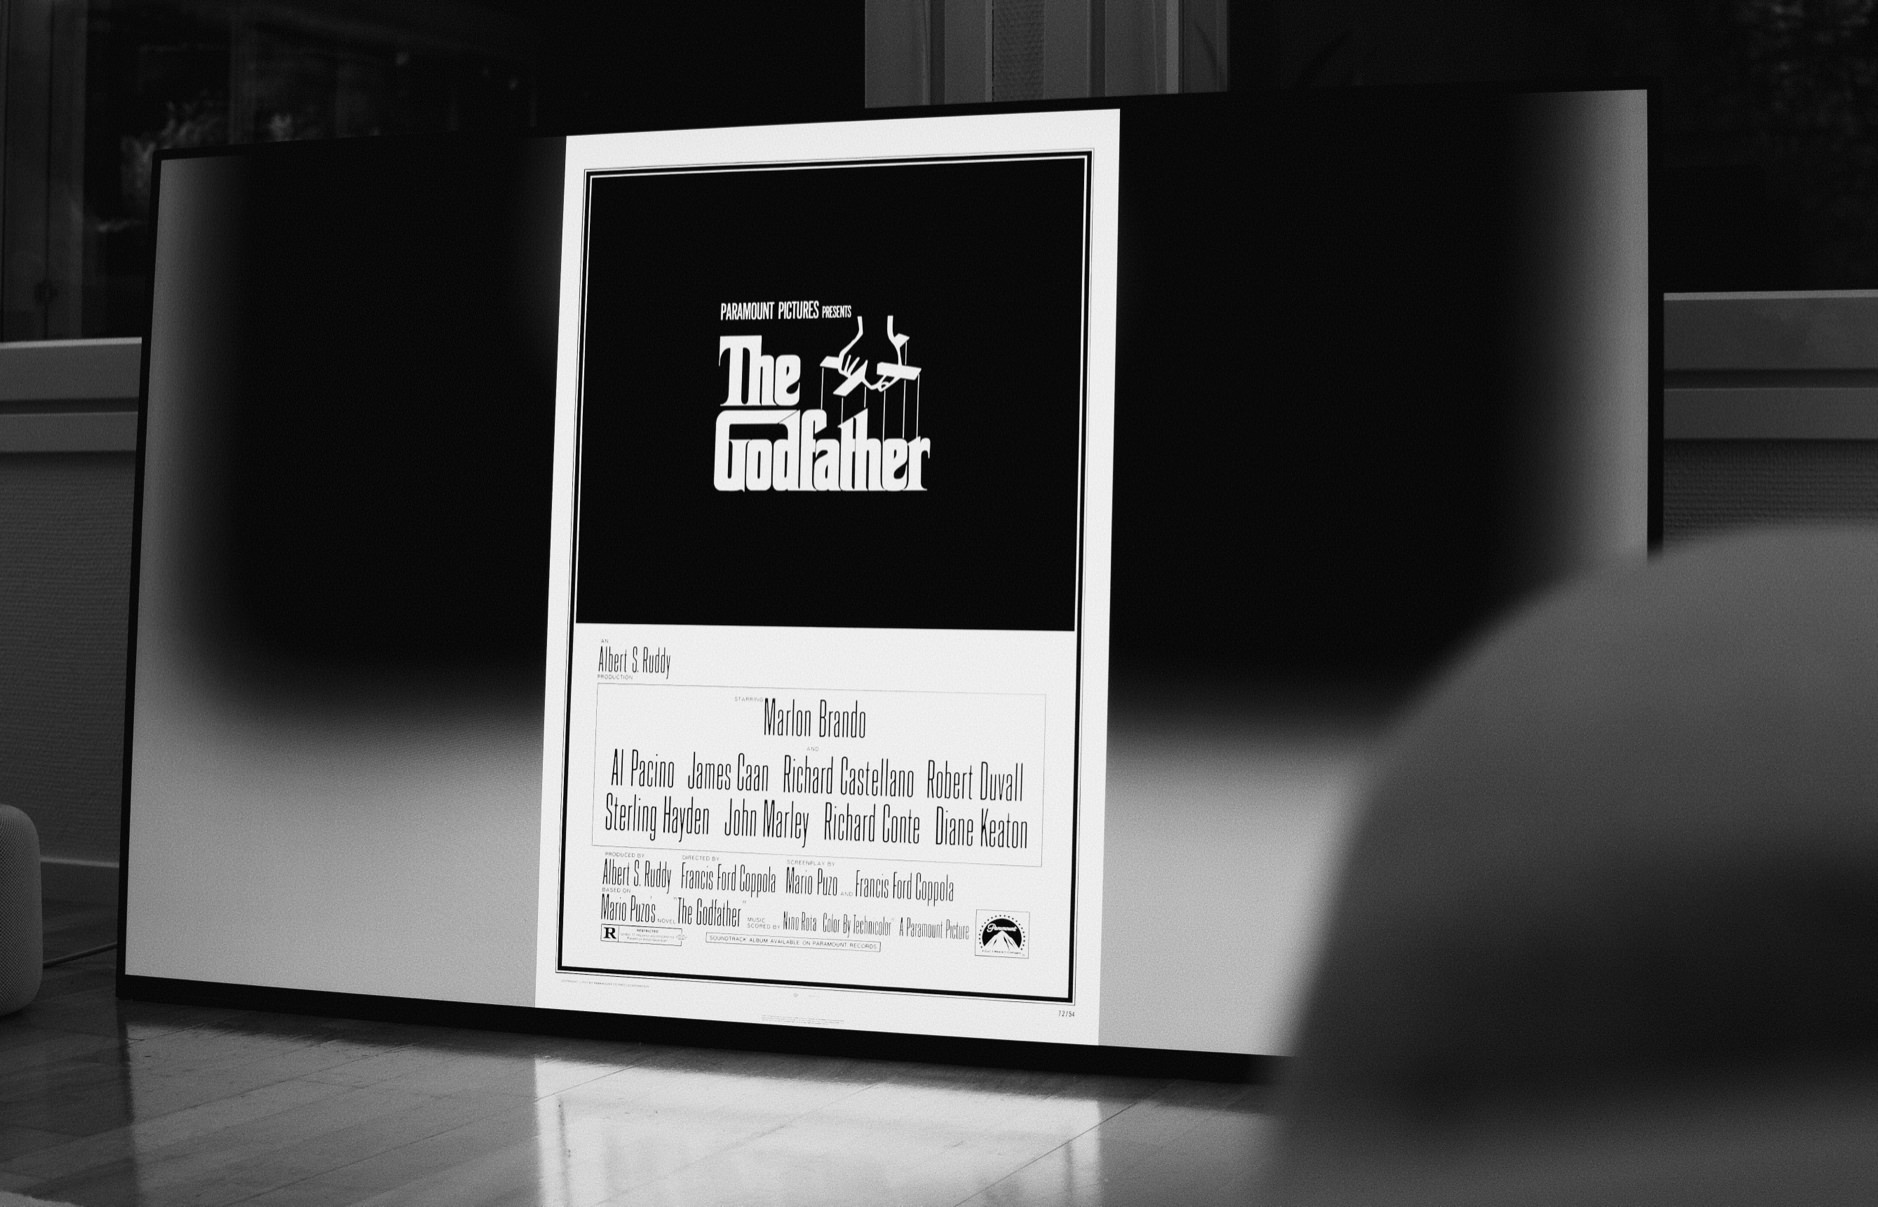 Das Foto zeigt ein Schwarz-Weiß-Bild eines Filmplakats von "Der Pate" mit dem berühmten Puppenspieler-Logo, umgeben von einem weißen Rand, das in einem modernen Raum gegen einen Fernseher lehnt. Auf dem Plakat sind die Namen der Hauptdarsteller und des Regisseurs sowie das Logo von Paramount Pictures zu erkennen.